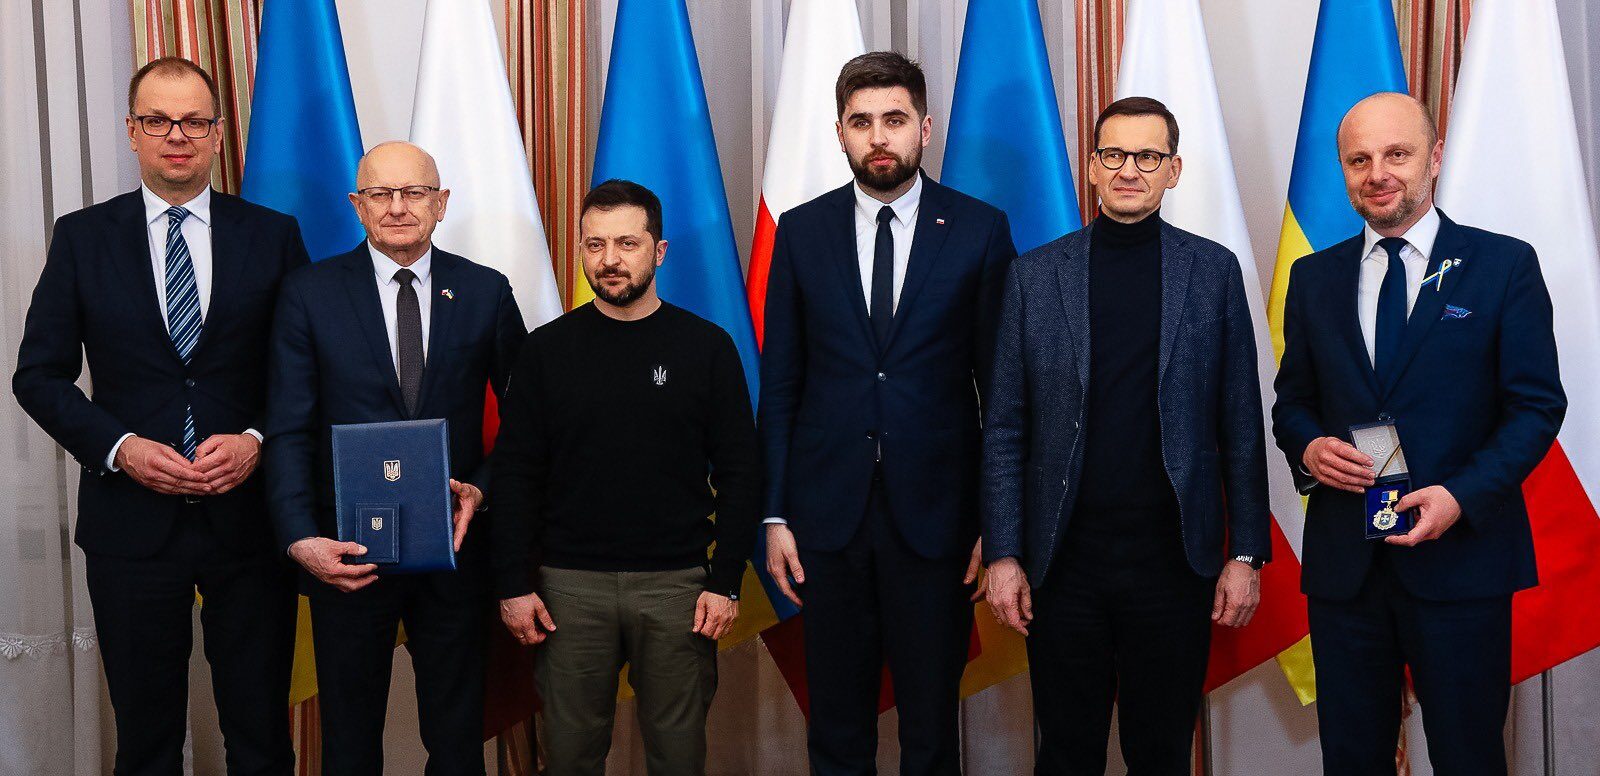 Мери чотирьох польських міст отримали почесні відзнаки з рук Президента України